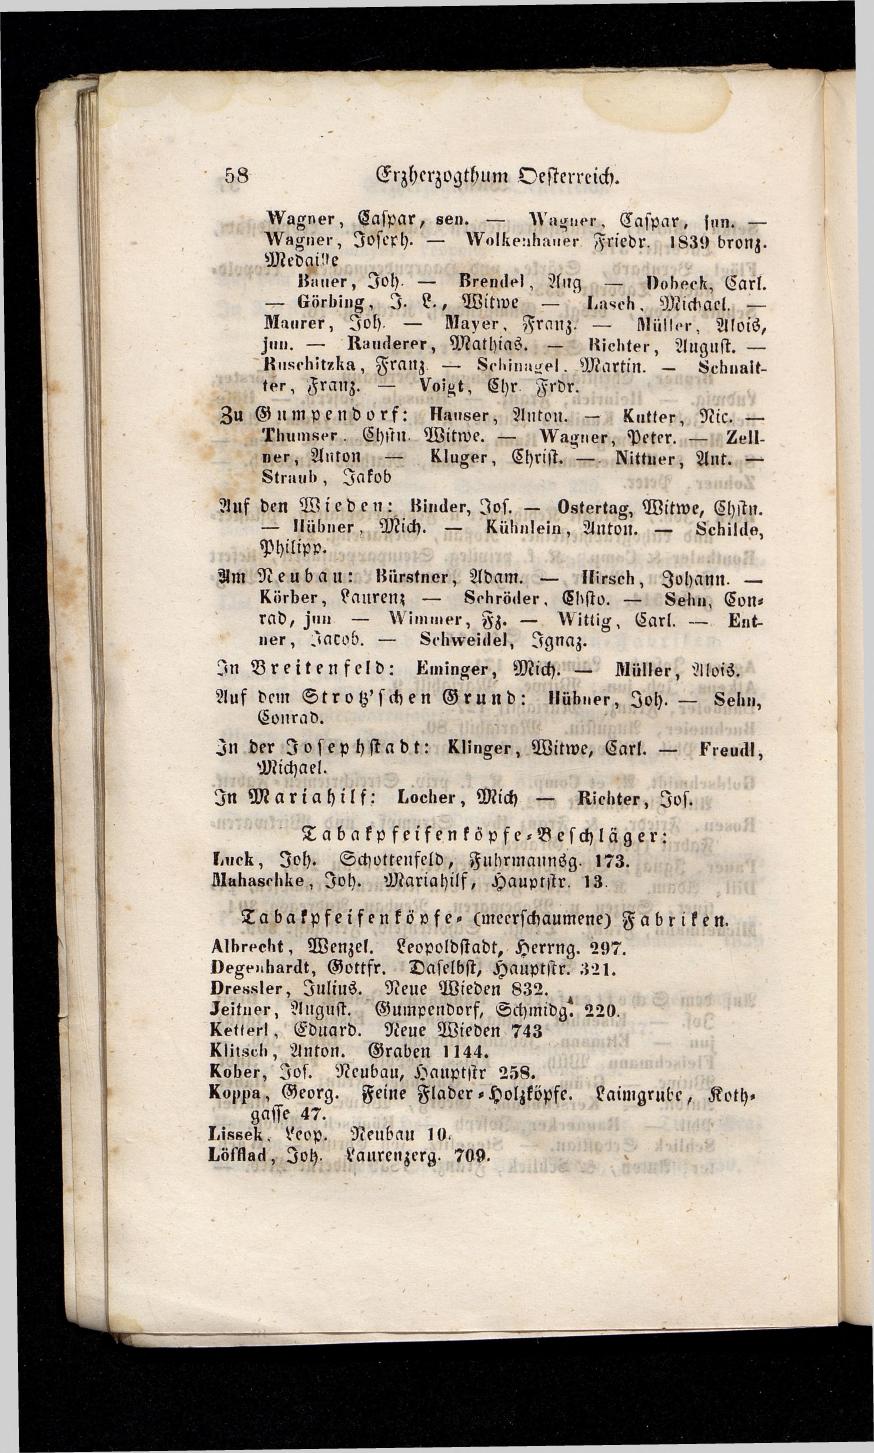 Grosses Adressbuch der Kaufleute. No. 13. Oesterreich ober u. unter der Enns 1844 - Seite 62